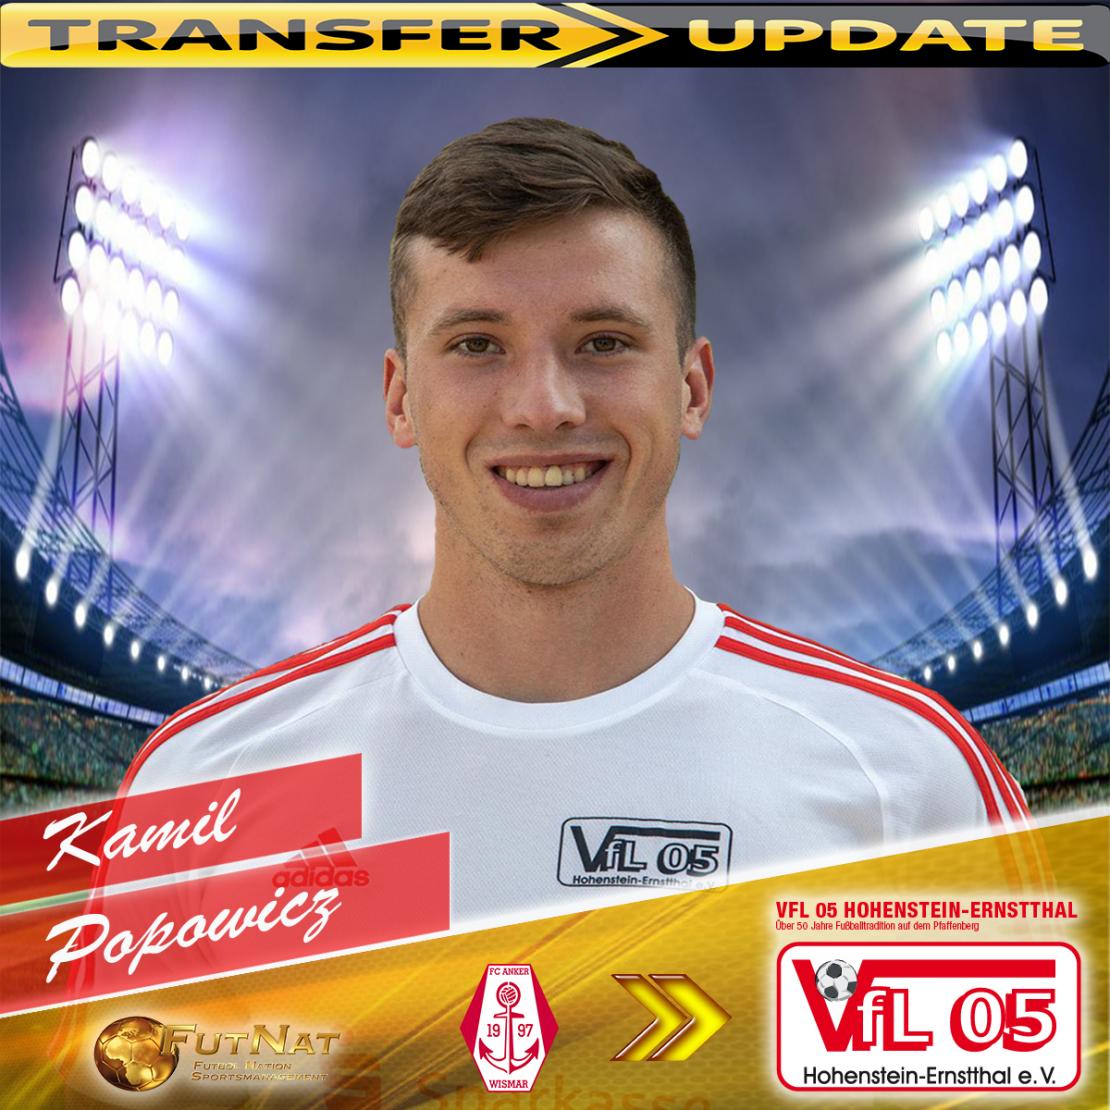 Kamil Popowicz transfer to VfL 05 Hohenstein-Ernstthal